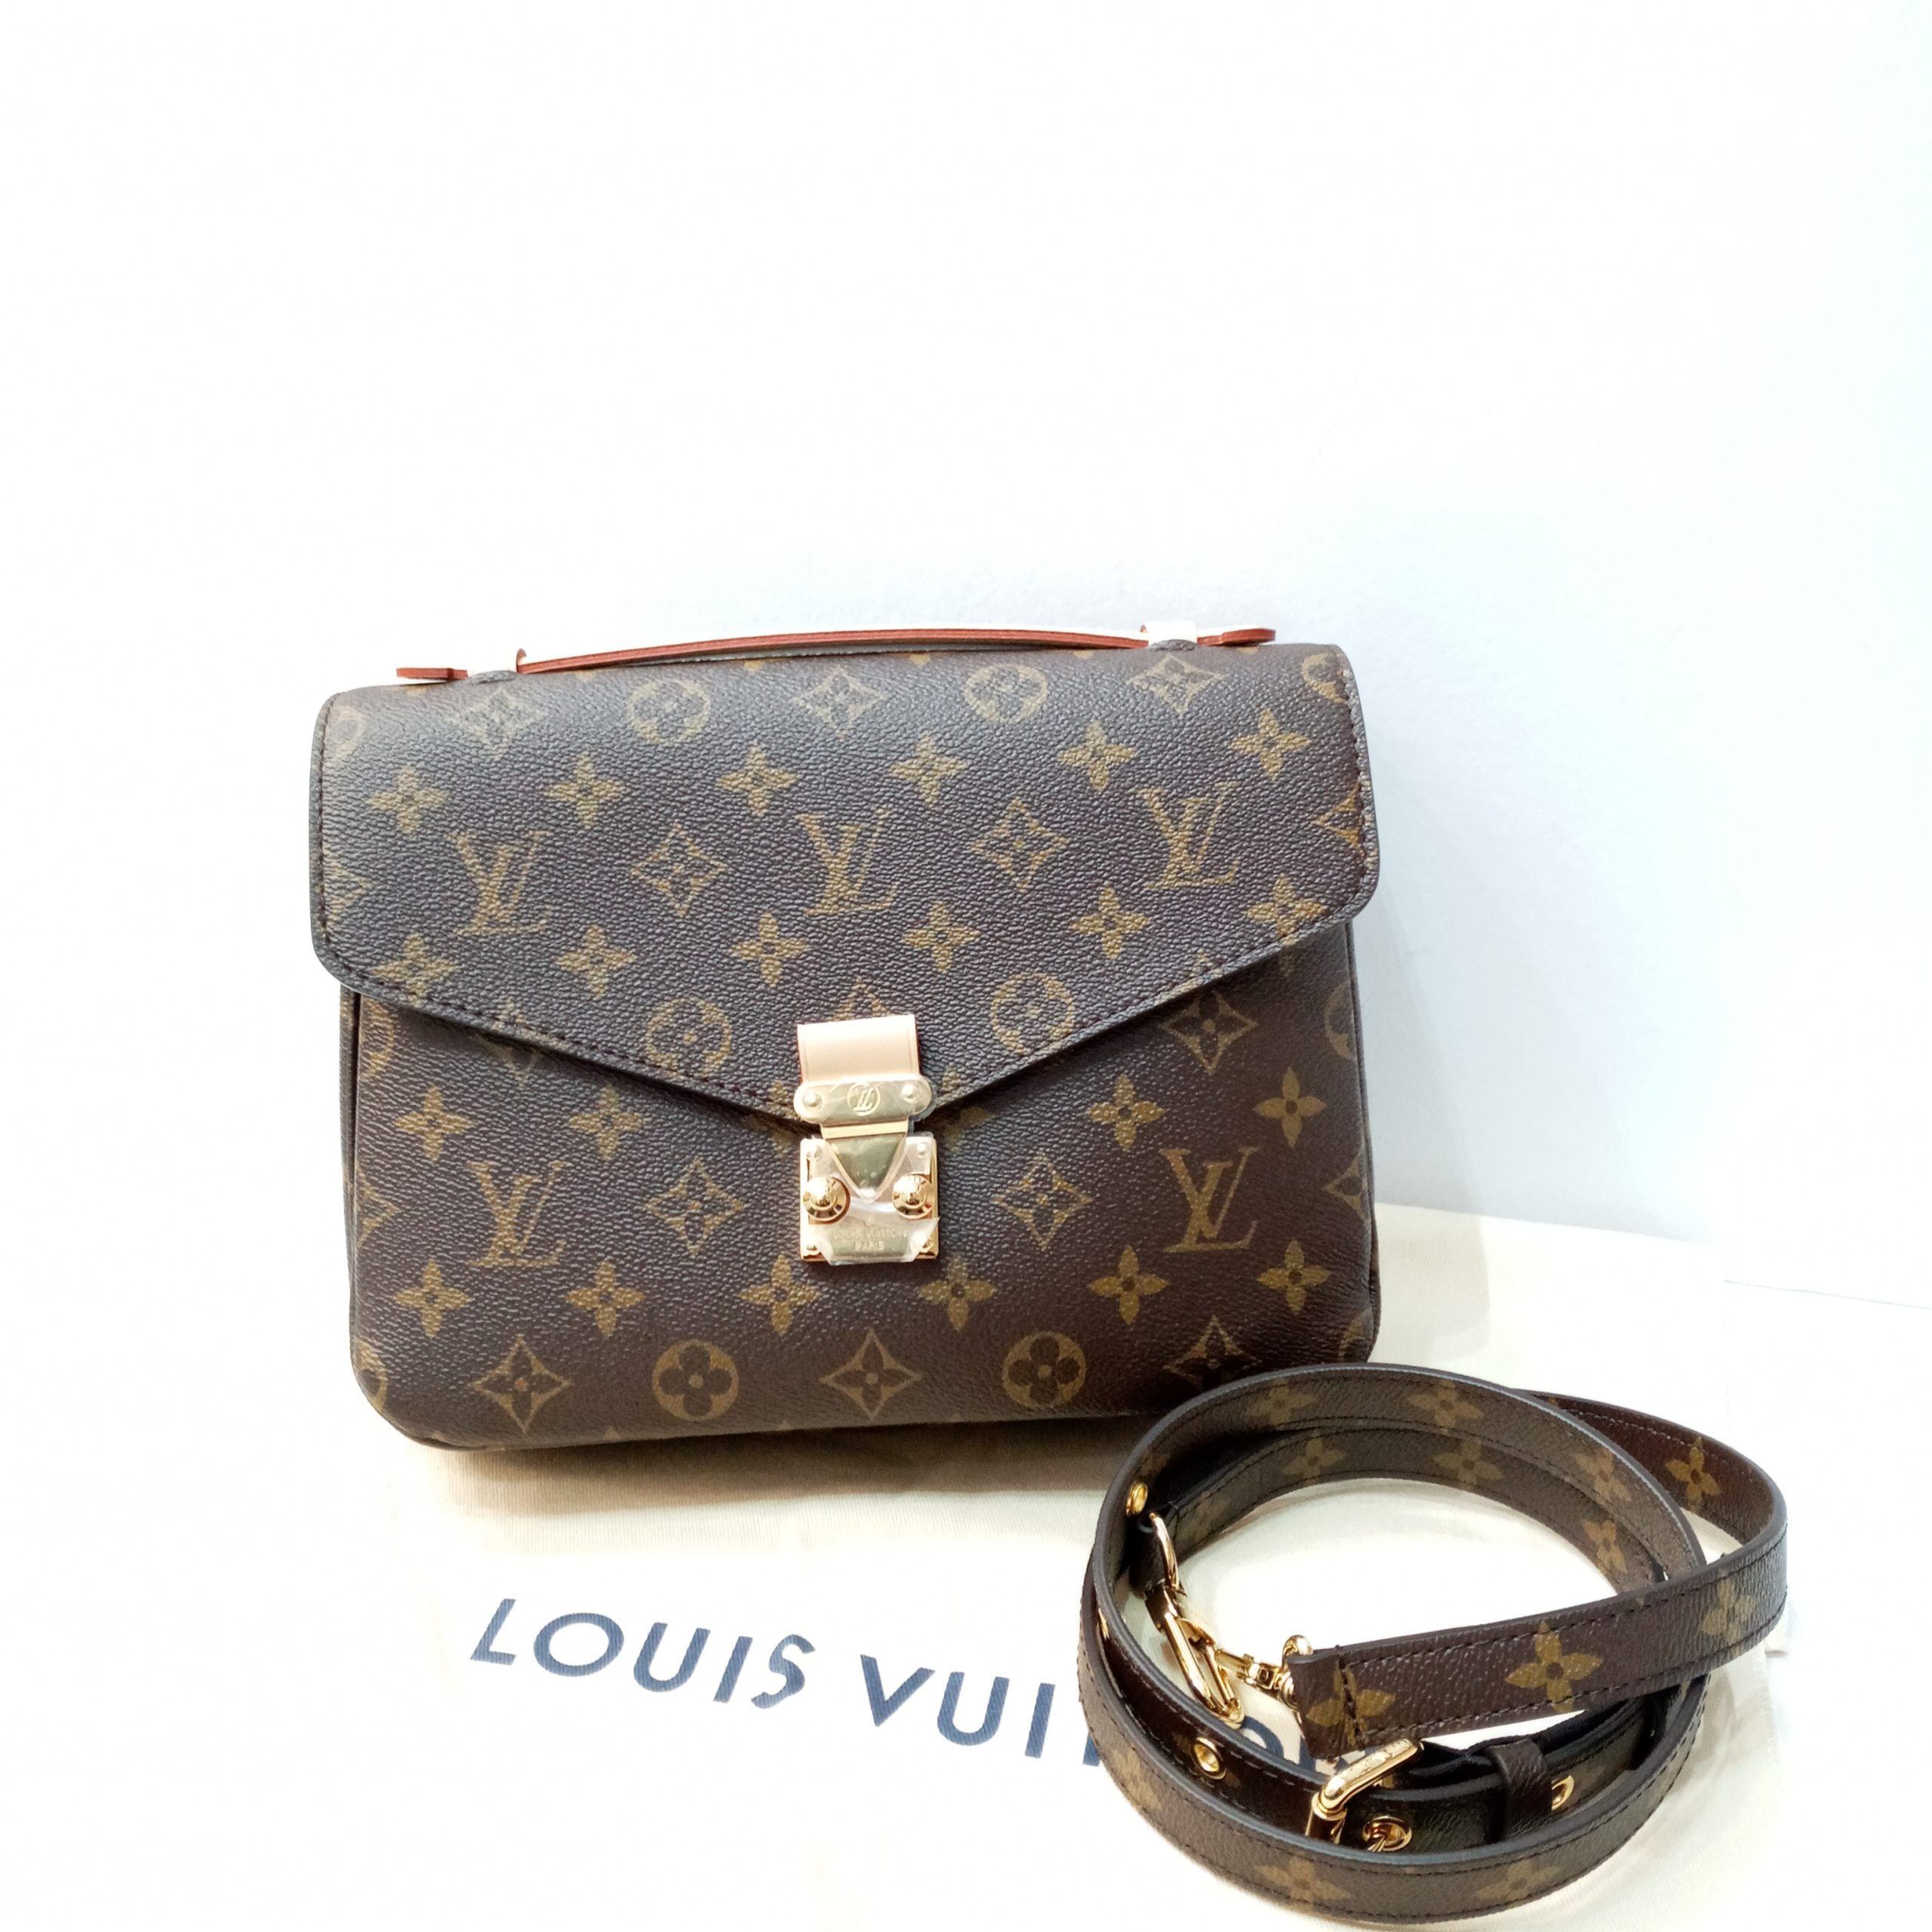 Shop Louis Vuitton MONOGRAM Pochette métis (M44875) by Bellaris